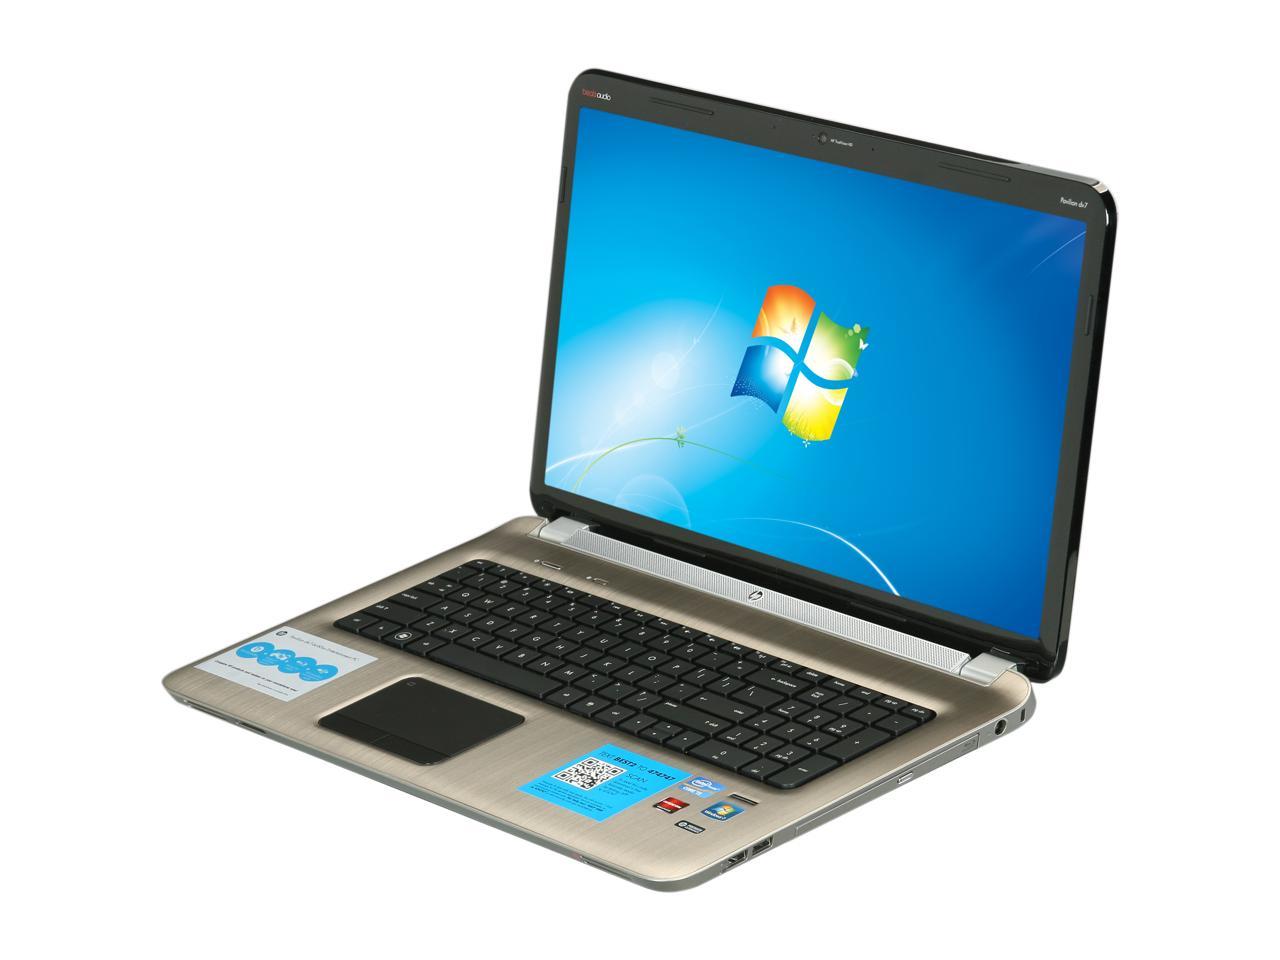 HP Laptop Pavilion dv7-6c60us Intel Core i5 2nd Gen 2450M (2.50 GHz) 6